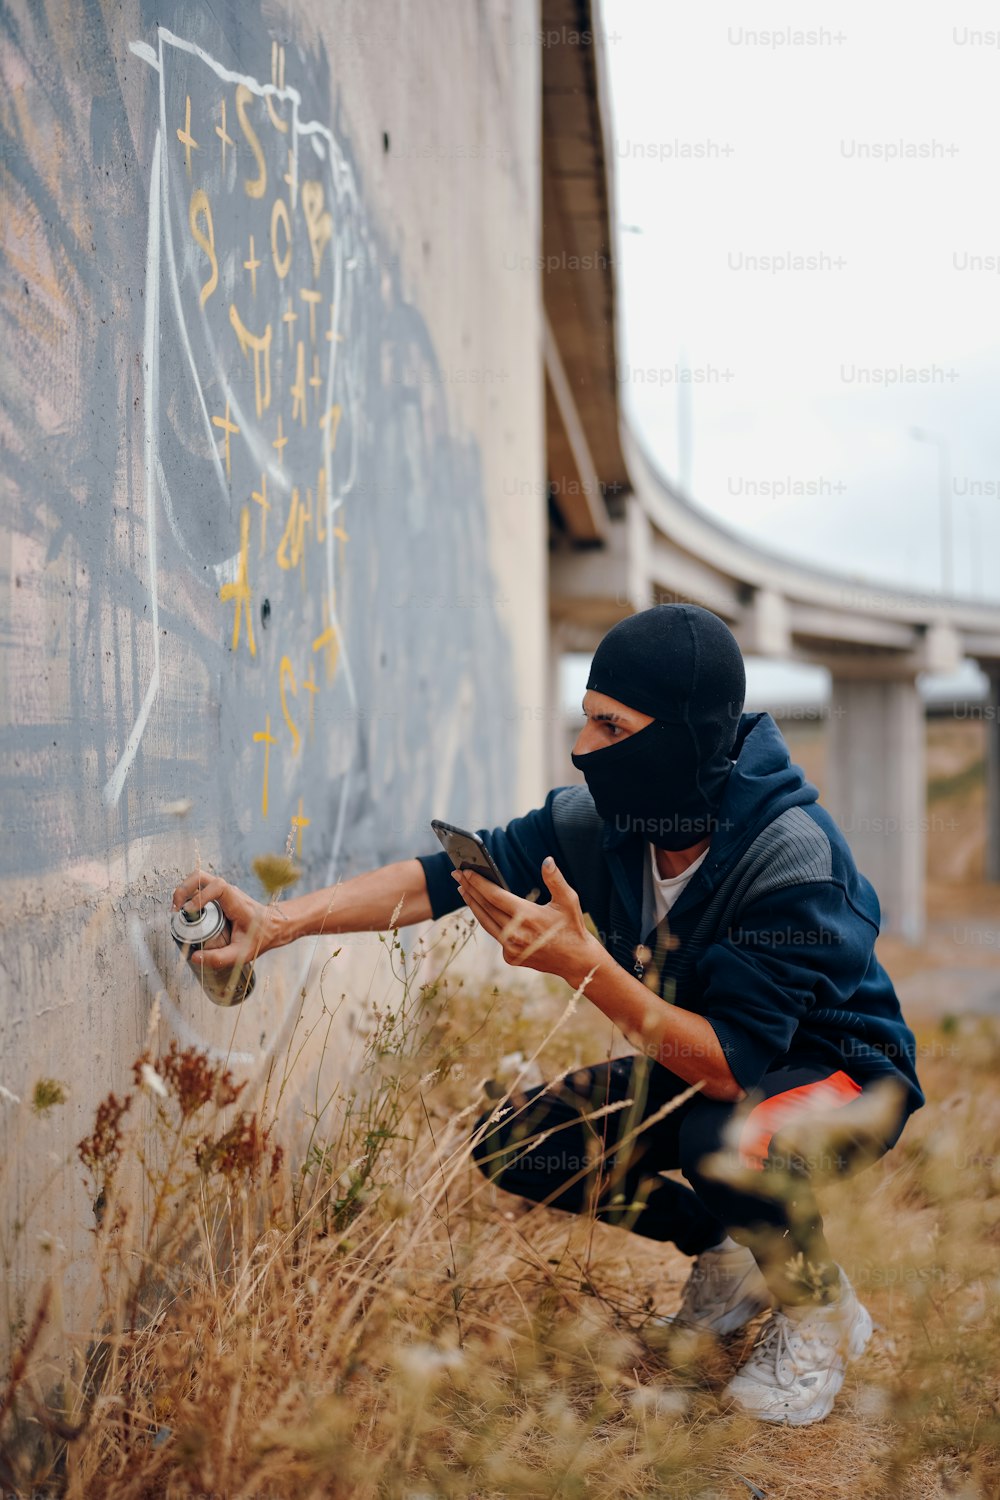 Un homme masqué est appuyé contre un mur